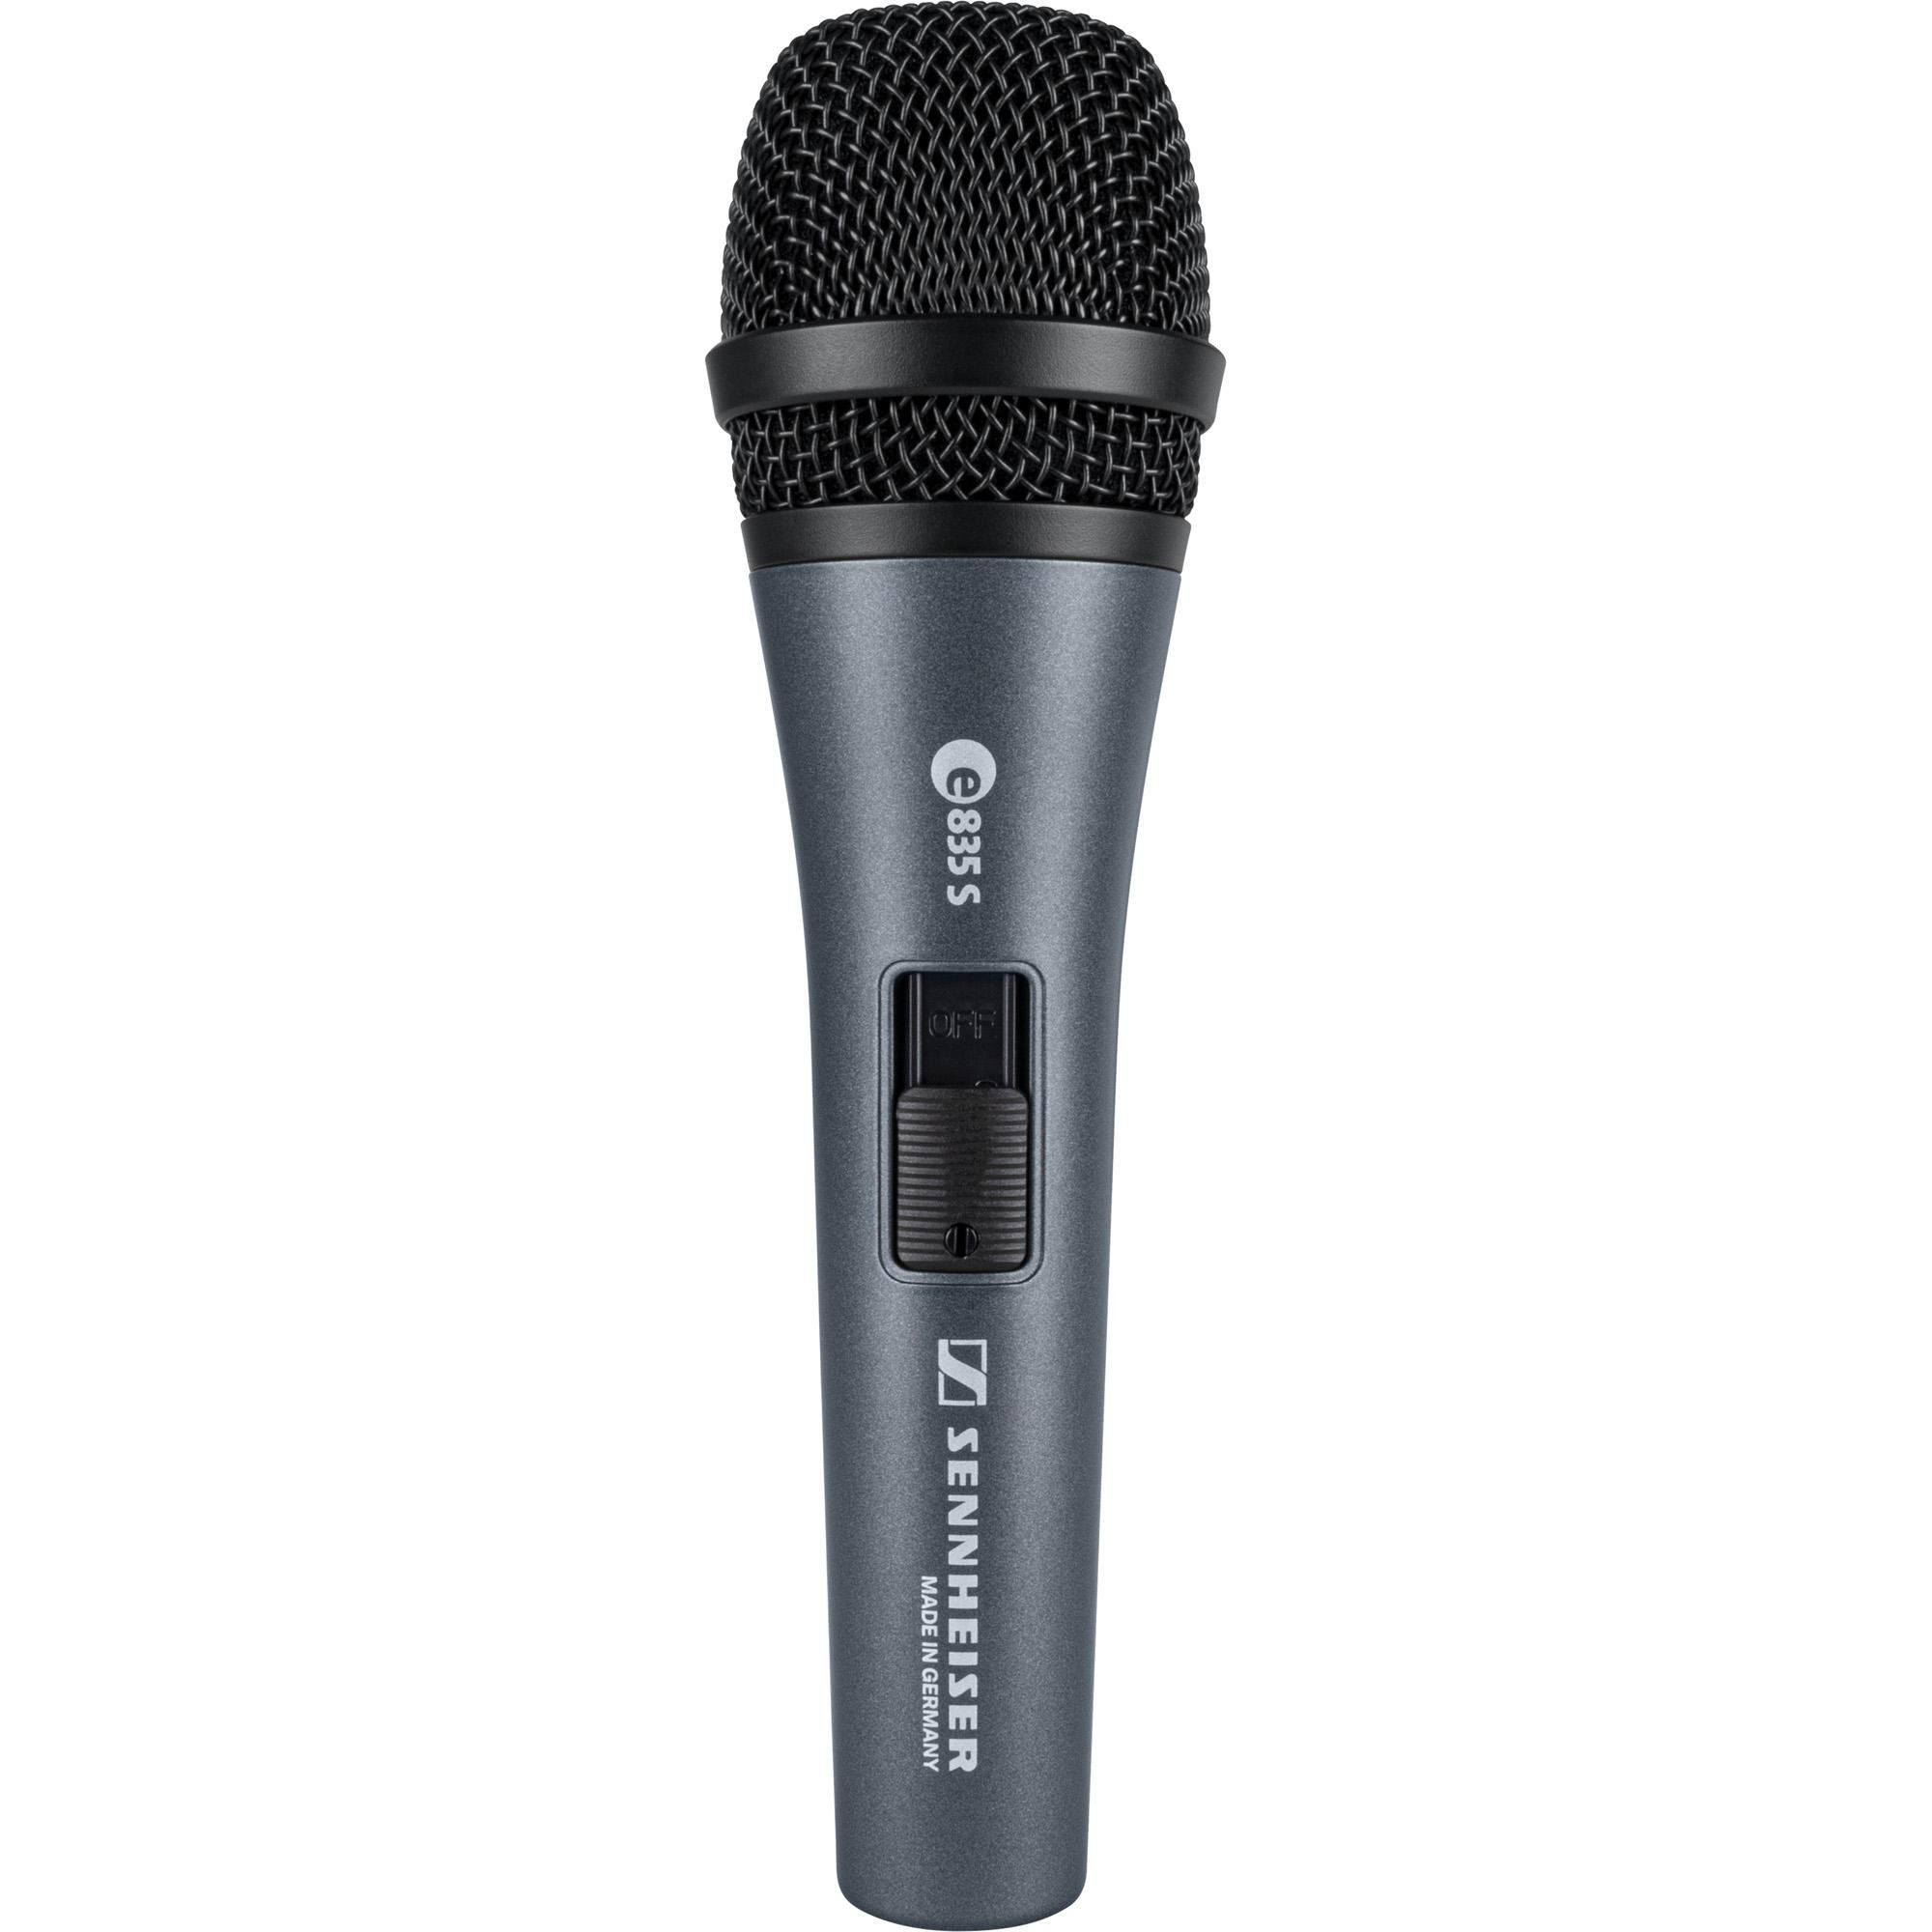 Microfone Sennheiser E835 S Com botão liga desliga